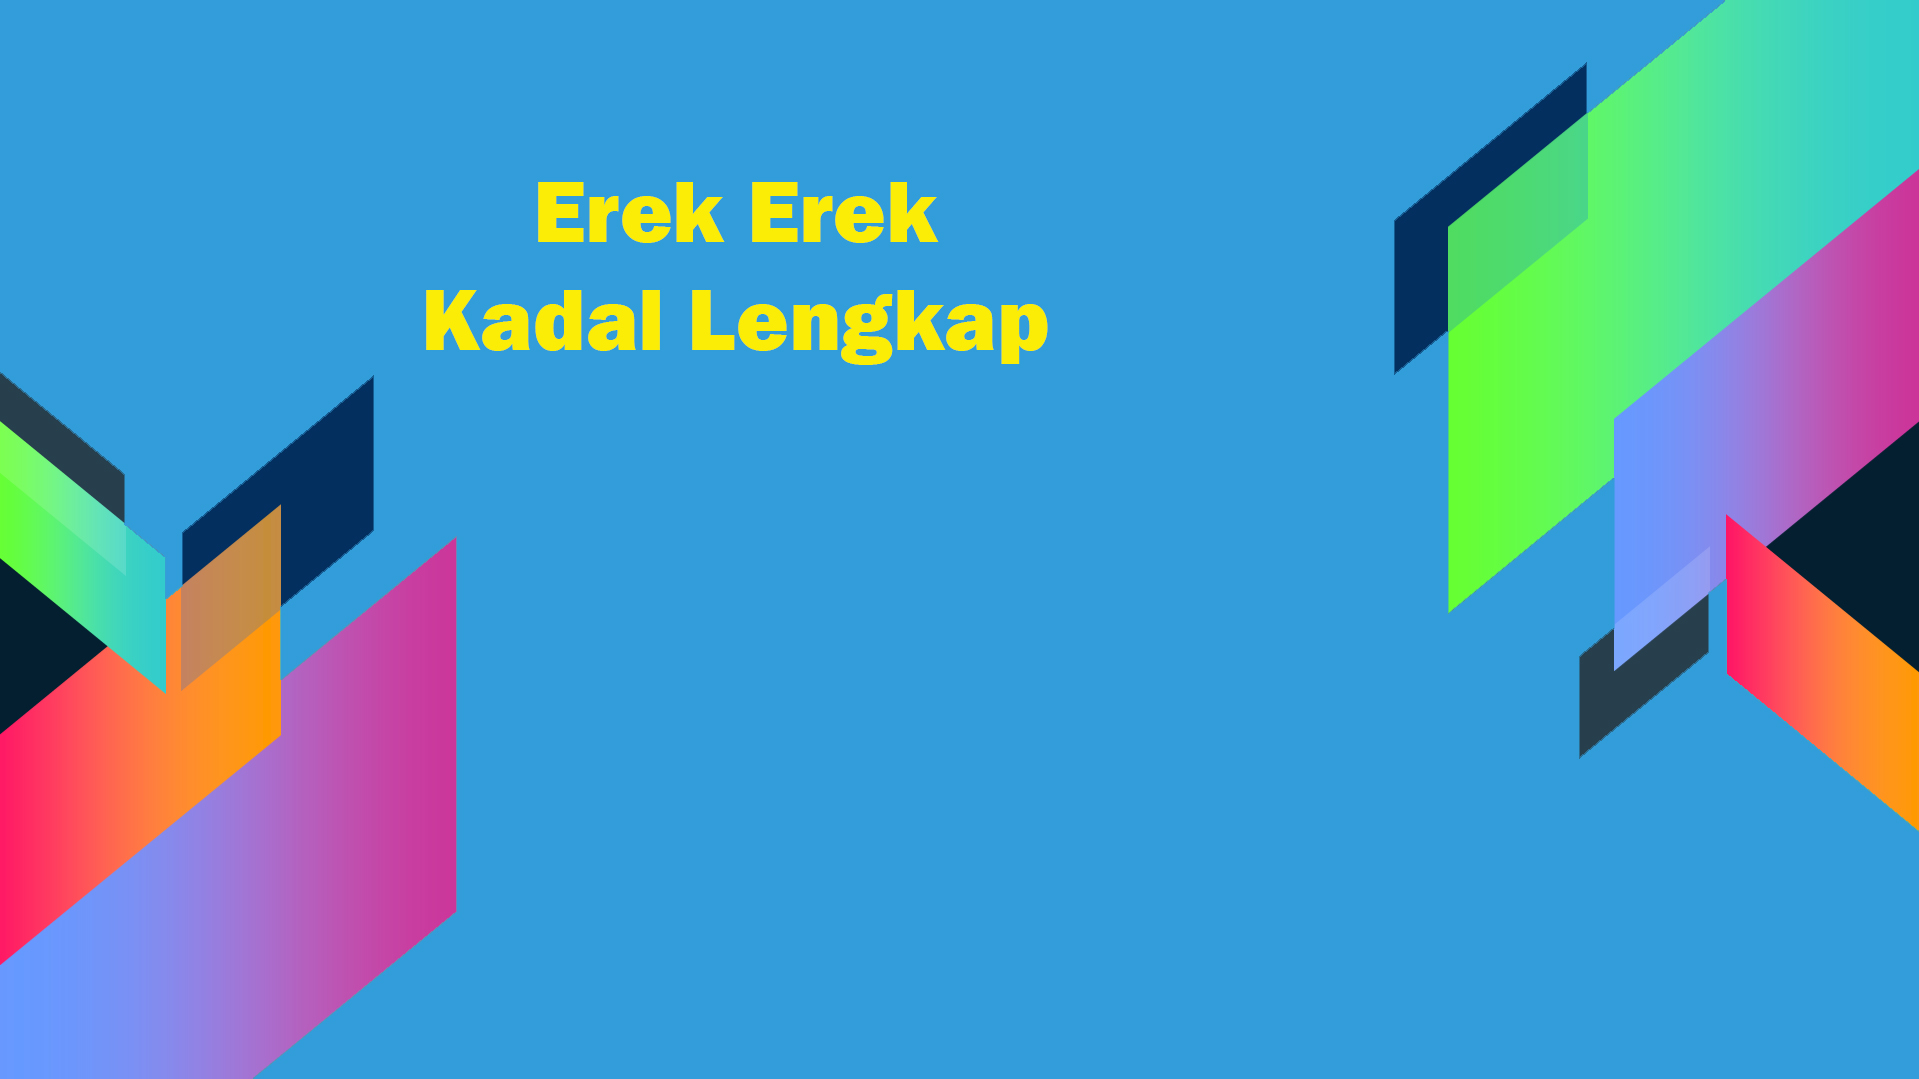 Erek Erek Kadal